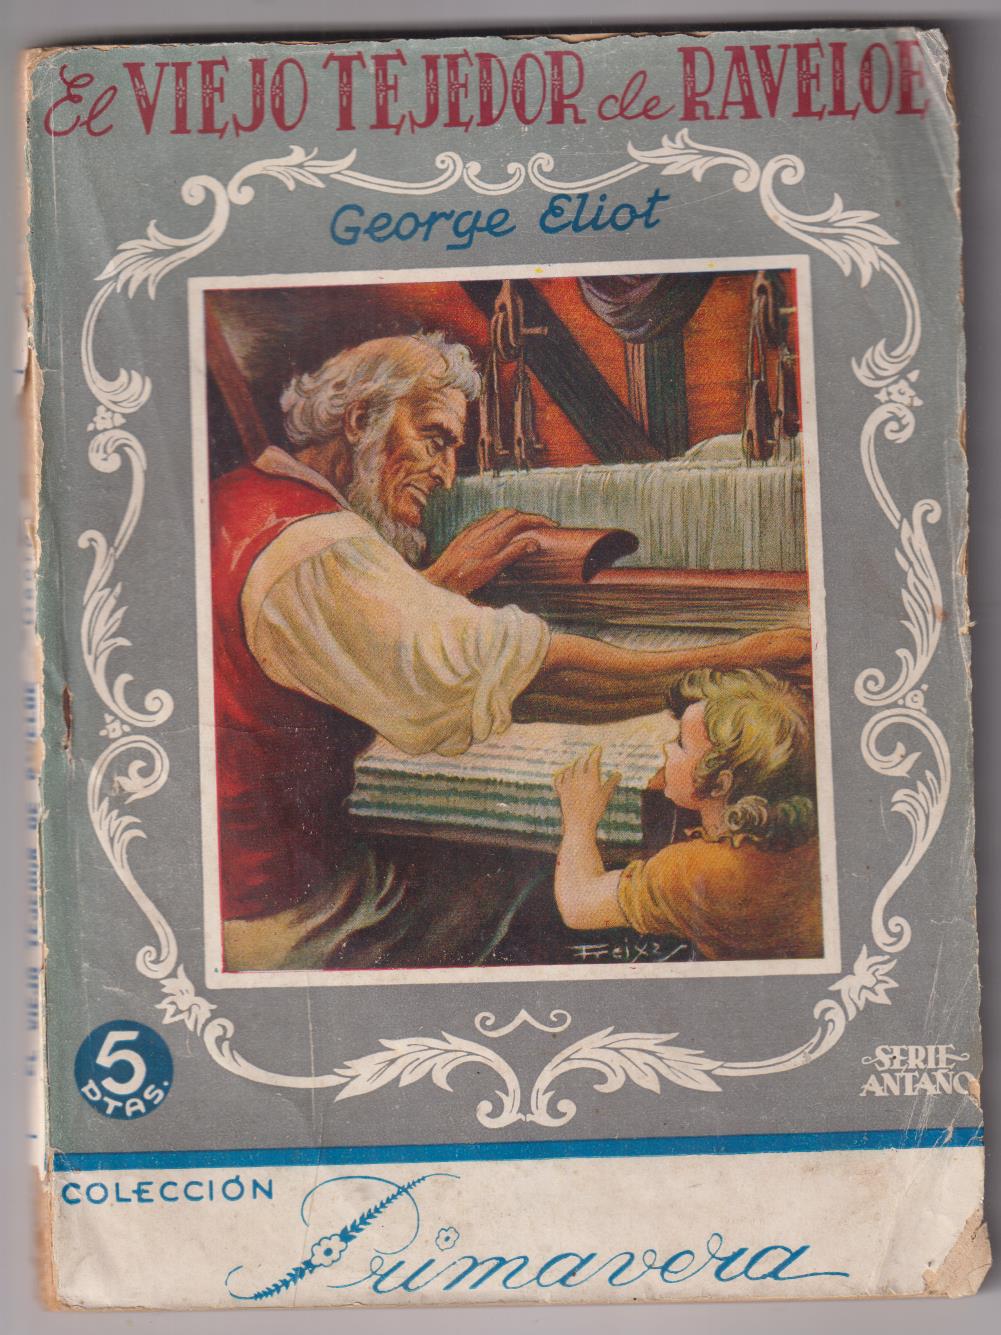 El Viejo tejedor de Raveloe por George Eliot. Serie Antaño. Años 40